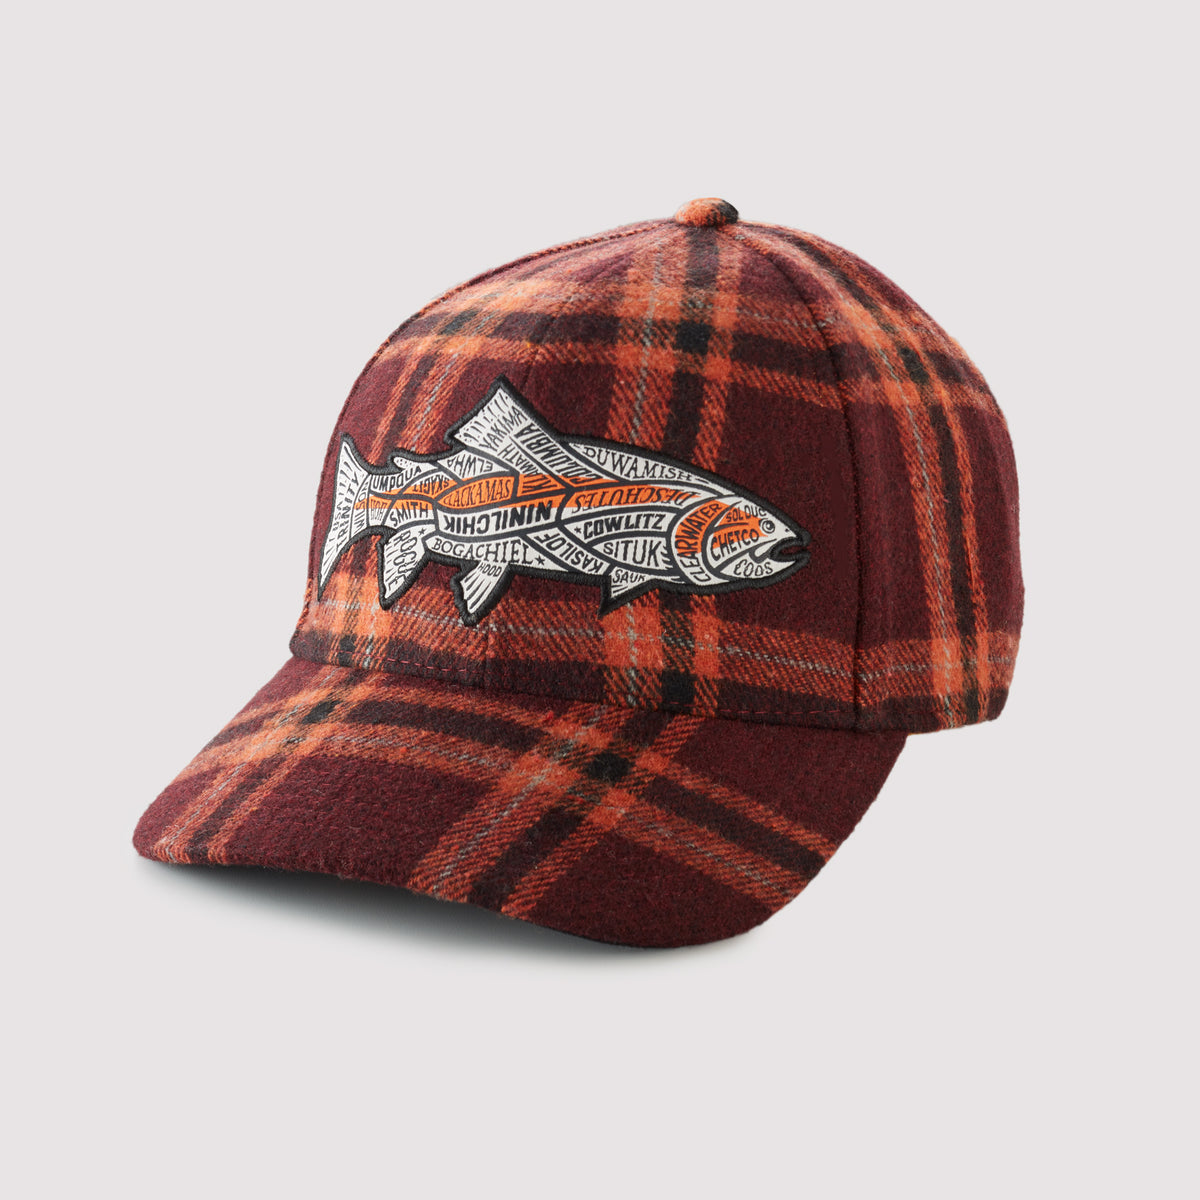 US Western Steelhead Rivers- Plaid Snapback Hat